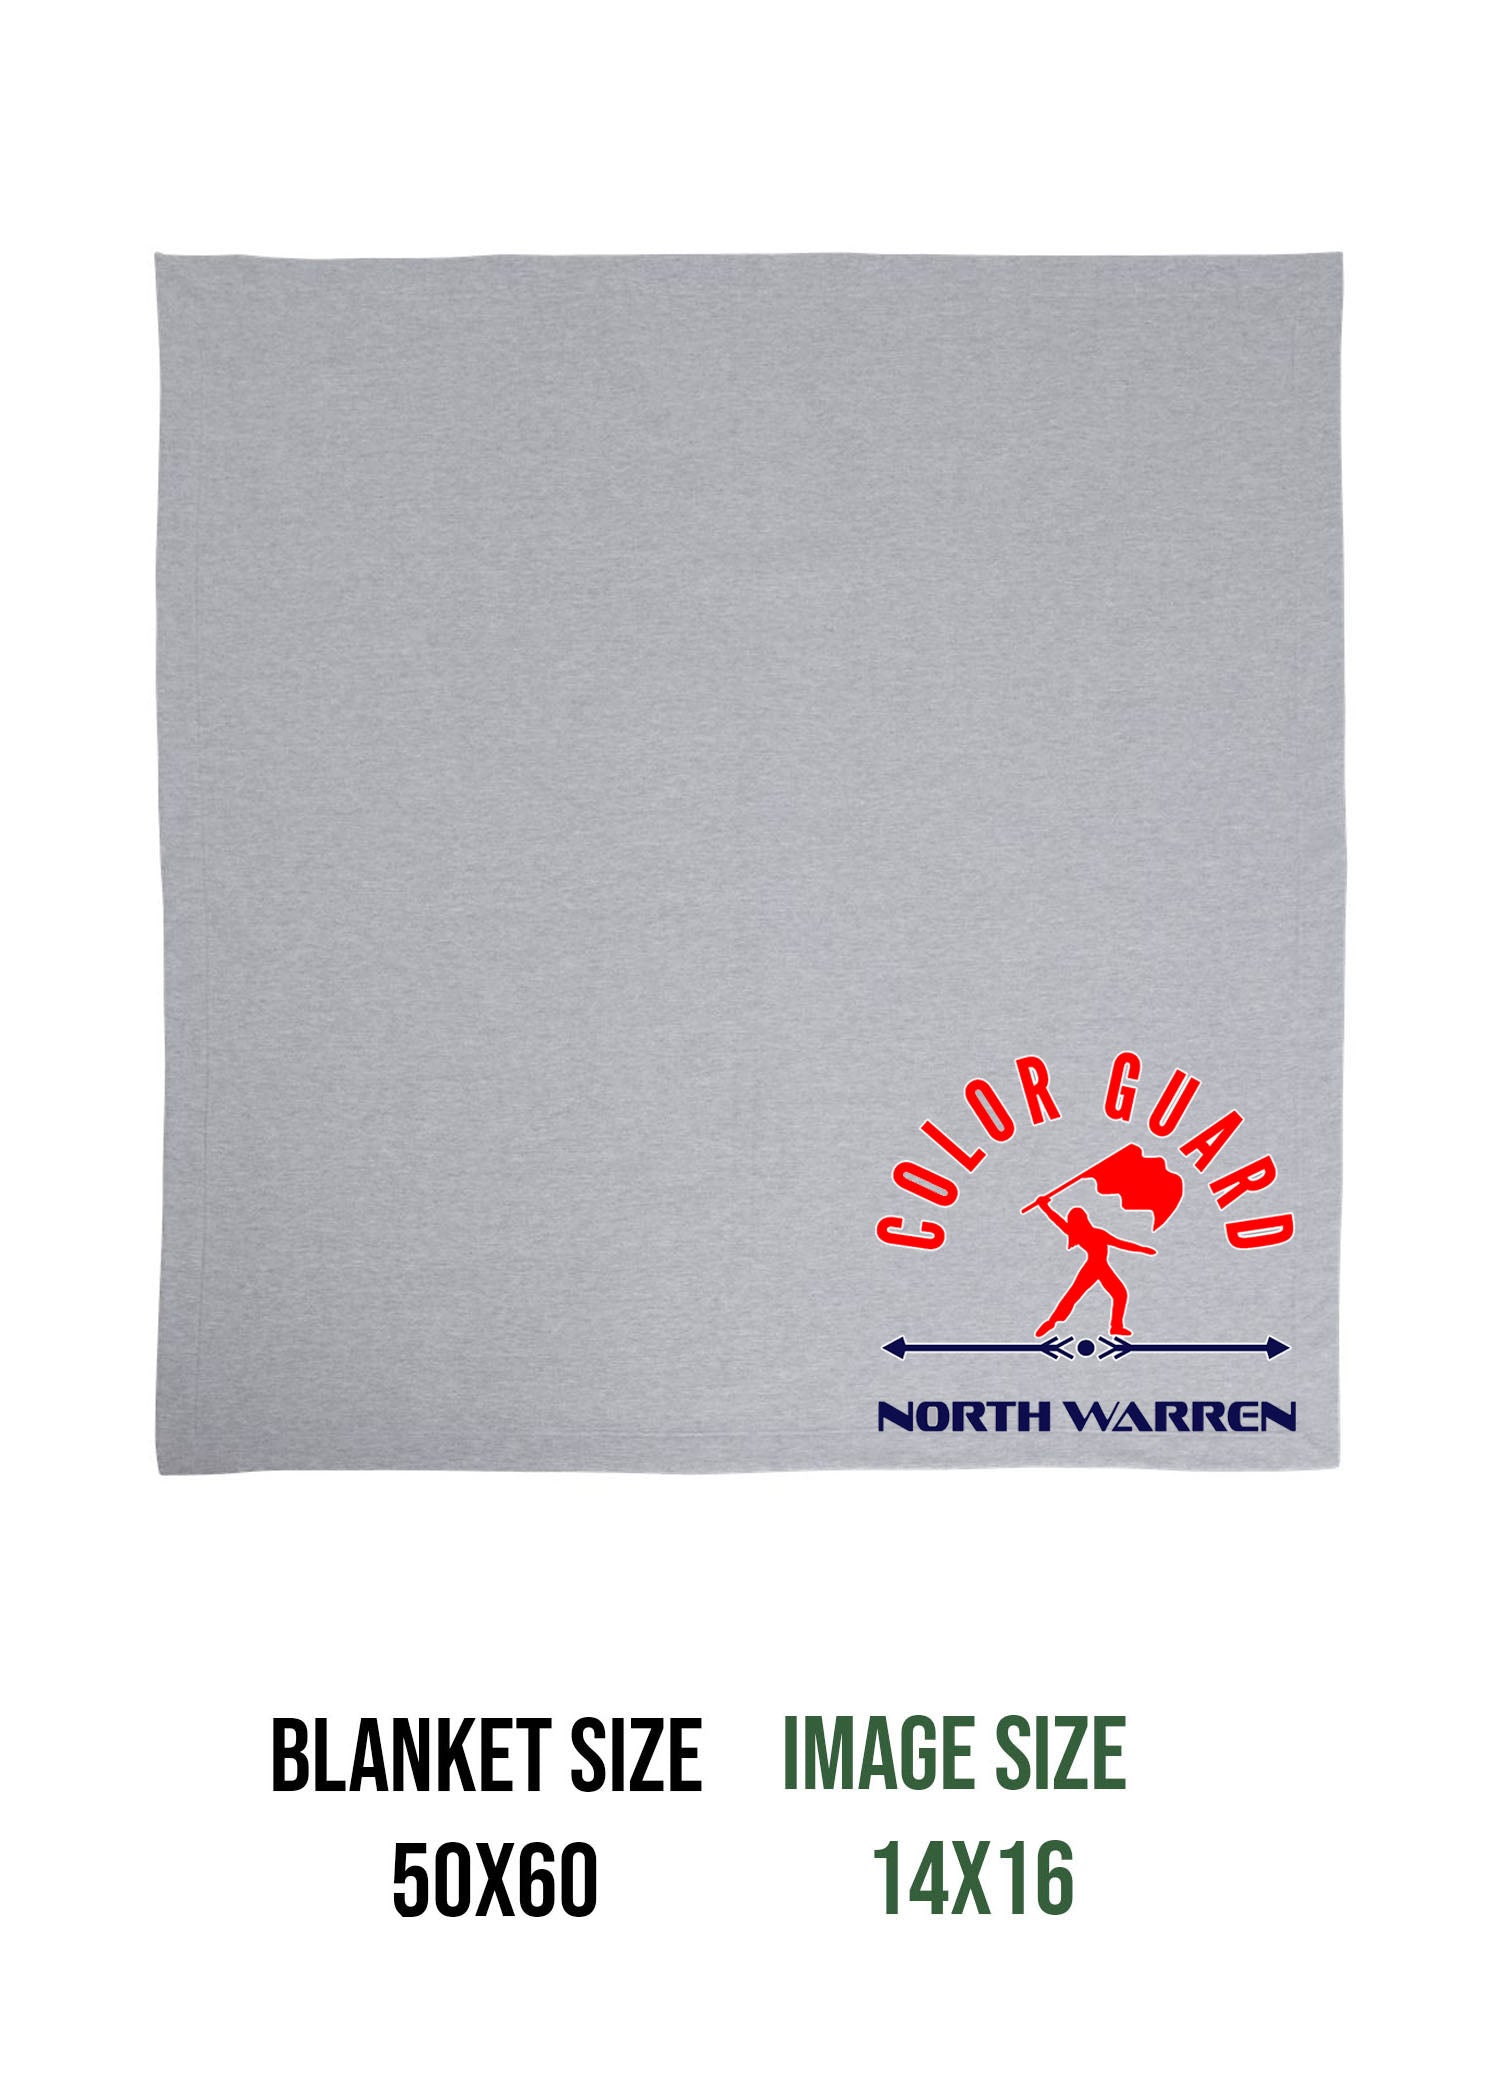 North Warren Band Design 5 Blanket